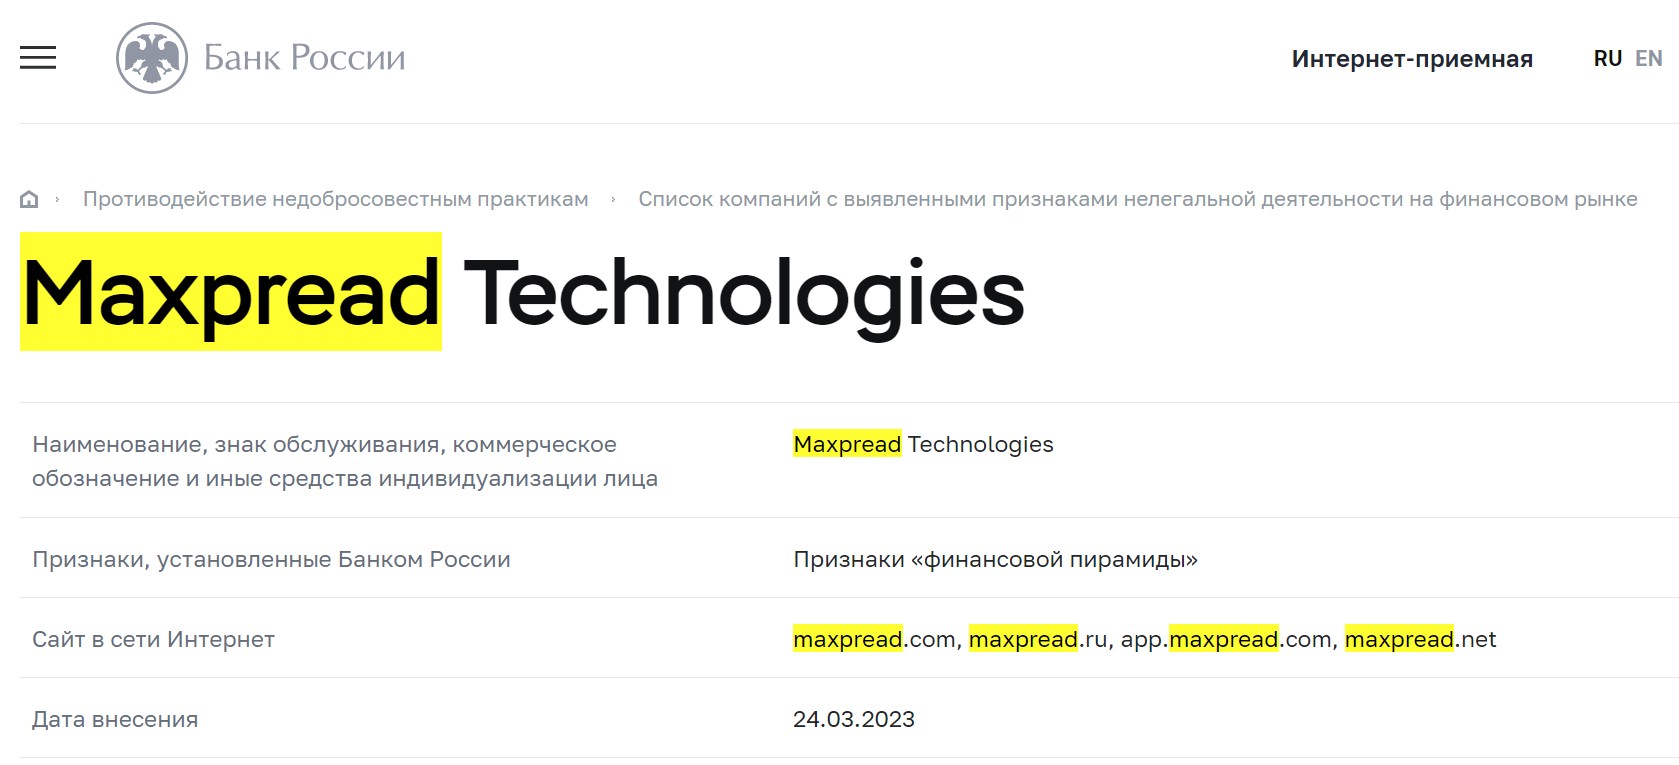 Maxpread Technologies обзор компании